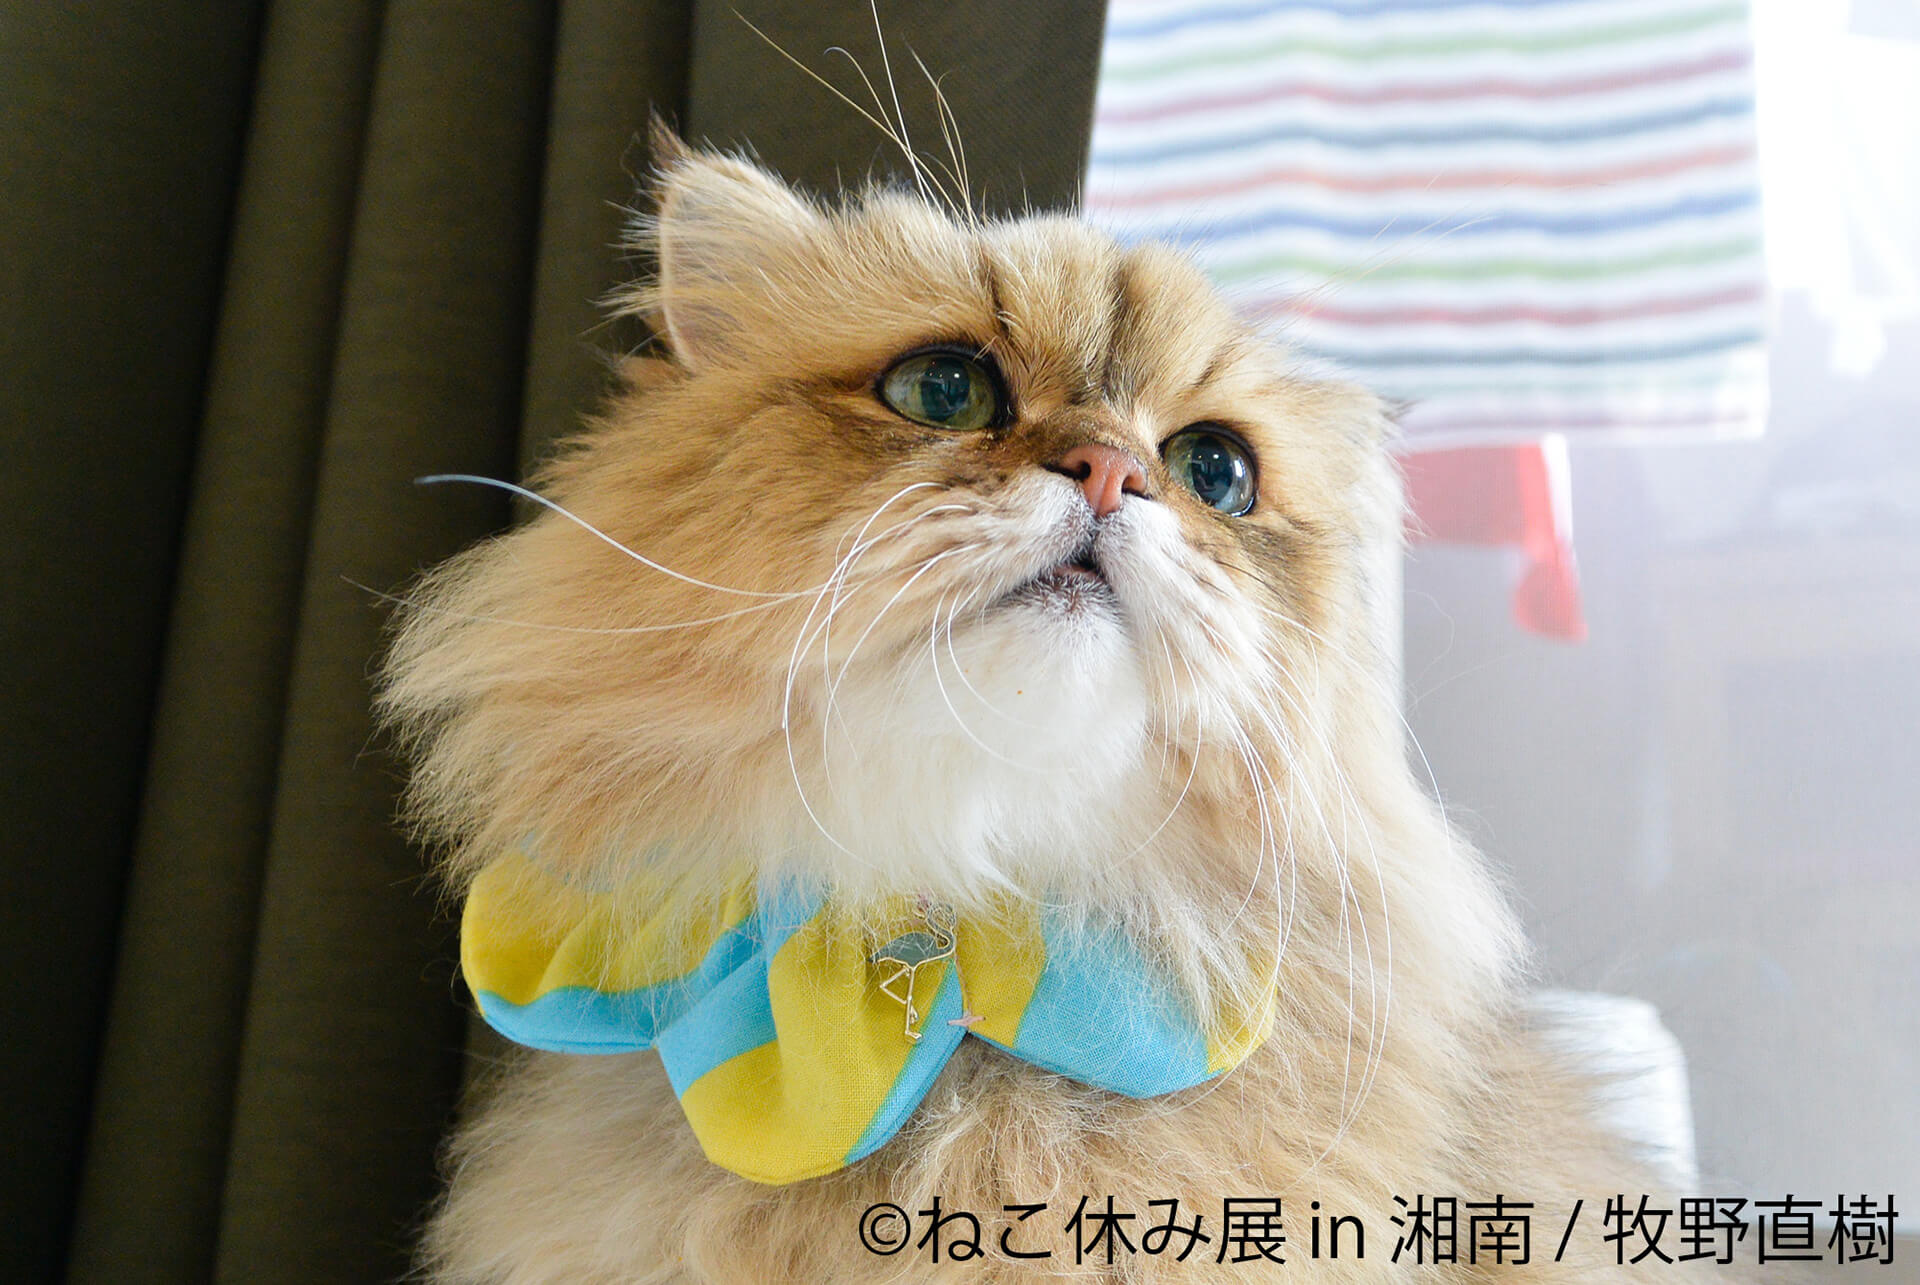 この写真はねこ休み展 in 湘南の展示作品で、斜め上を見上げる猫です